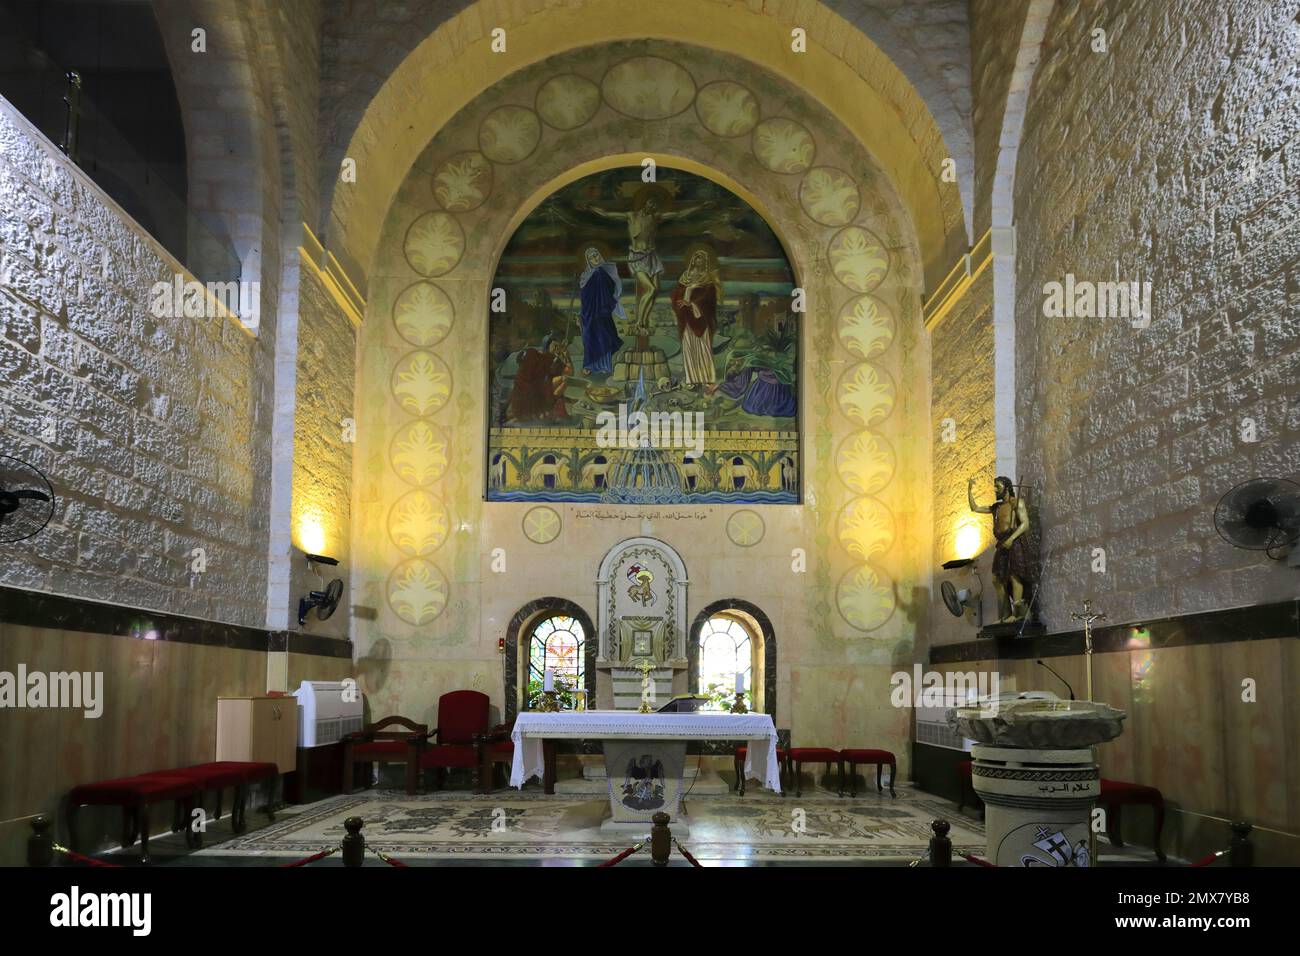 Das Innere der katholischen Kirche und des Schreins des Heiligen Johannes des Täufers, Prinzessin Haya Street, Madaba, Jordanien, Naher Osten Stockfoto